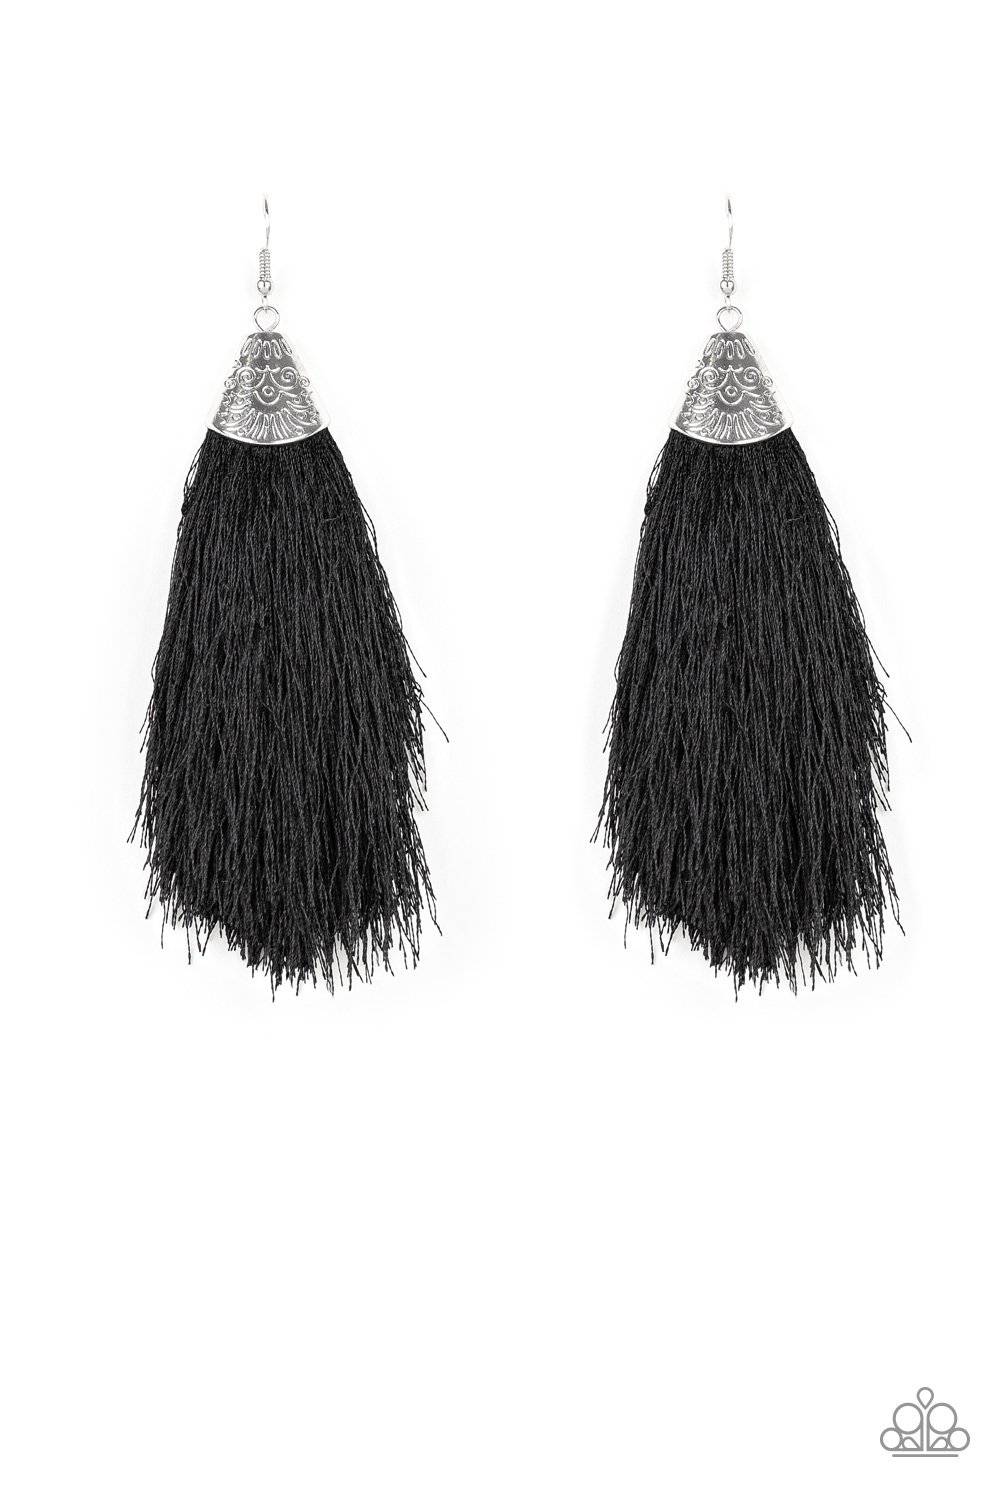 Tassel Temptress - Black Tassel Earrings - Paparazzi Accessories - GlaMarous Titi Jewels